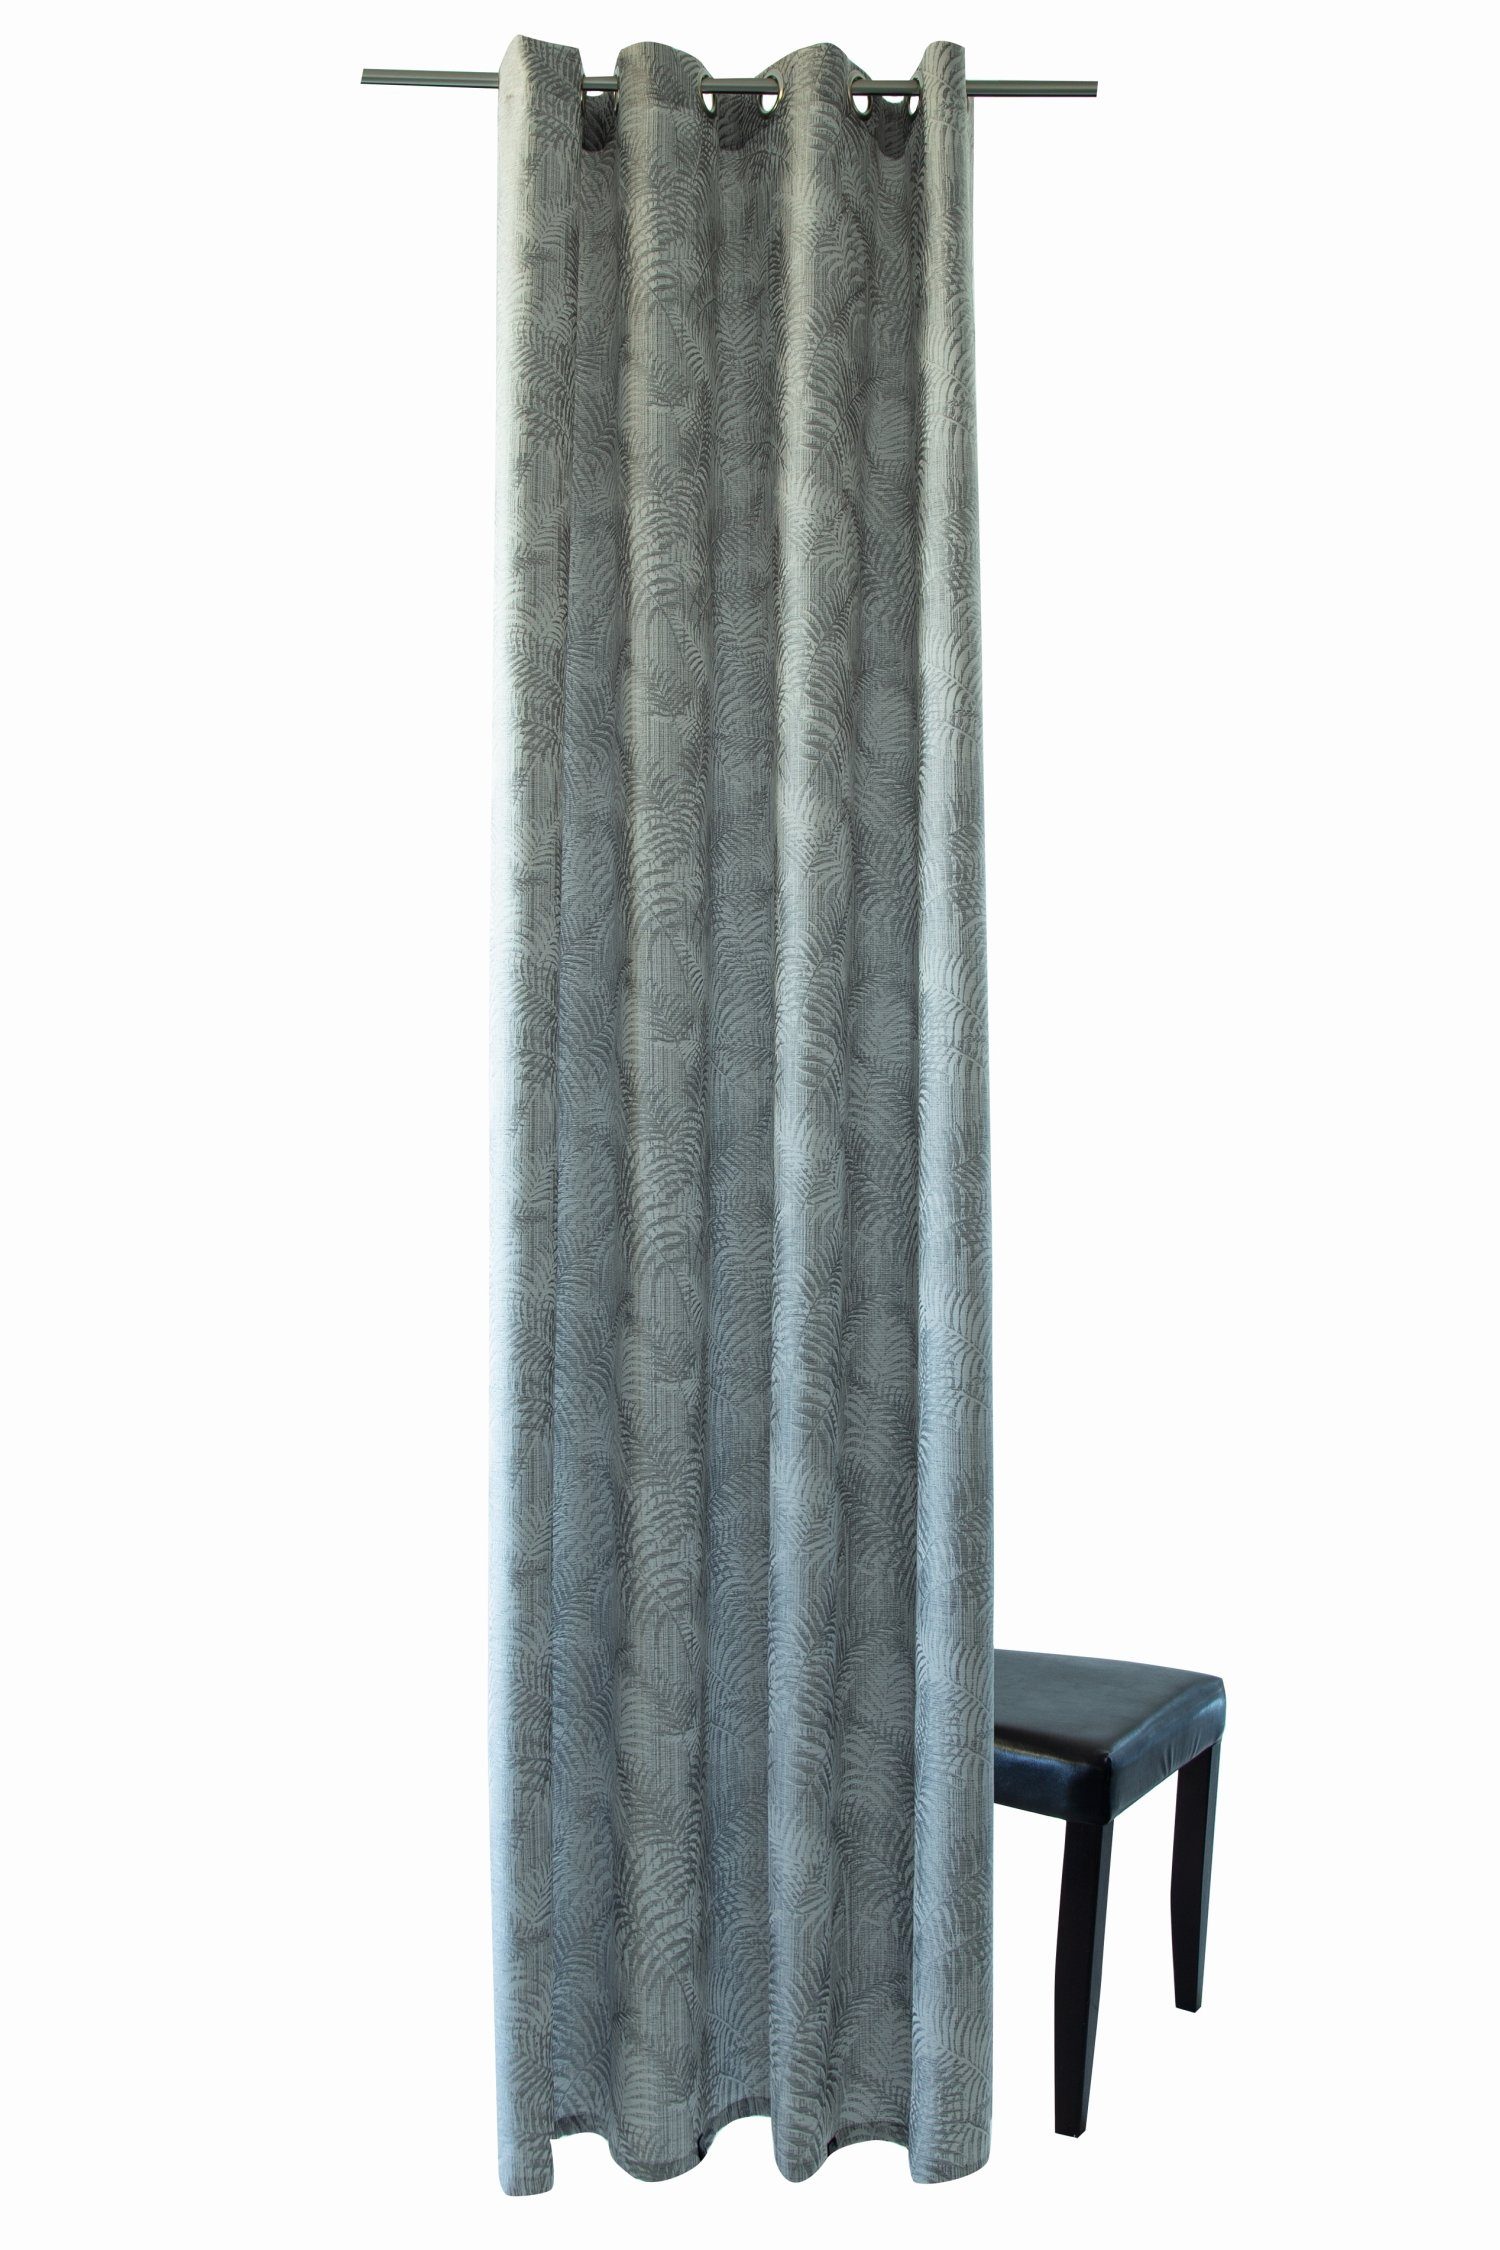 silver Farbe: Ösenschal Lichtschutz, Bali HOMING, 140x245cm Vorhang,